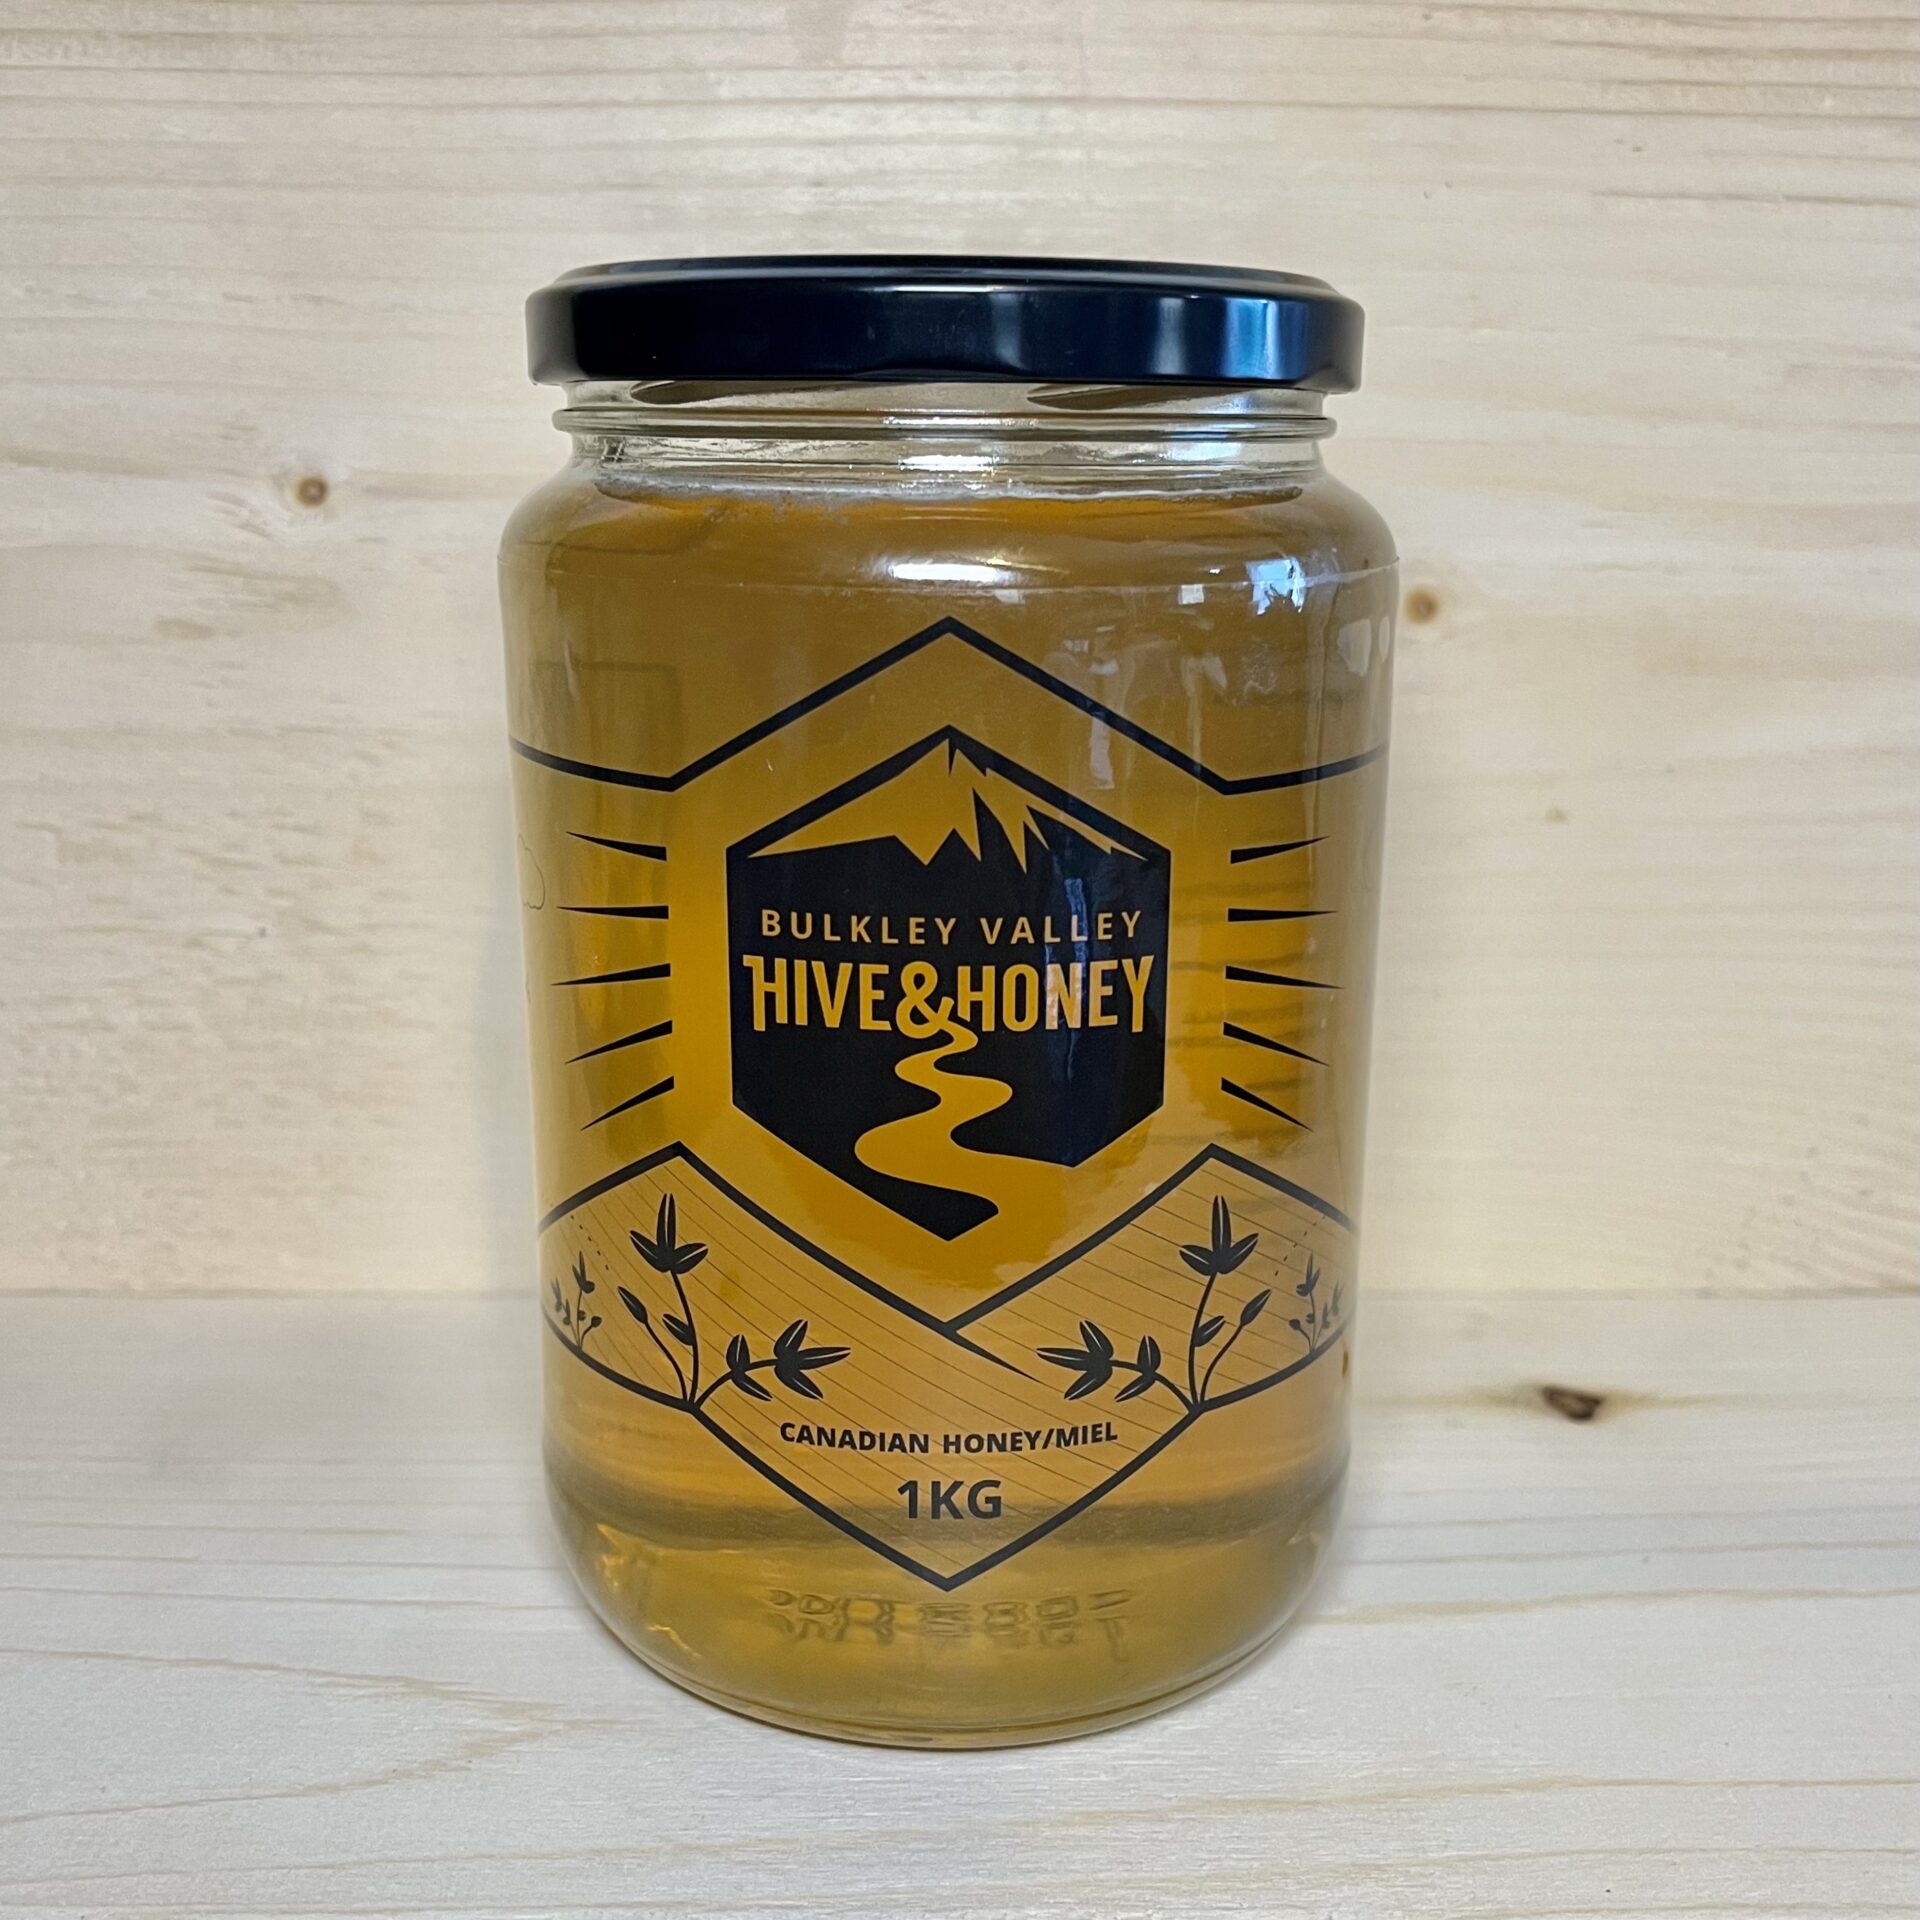 Honey Miel Hive Mini Honey Pot